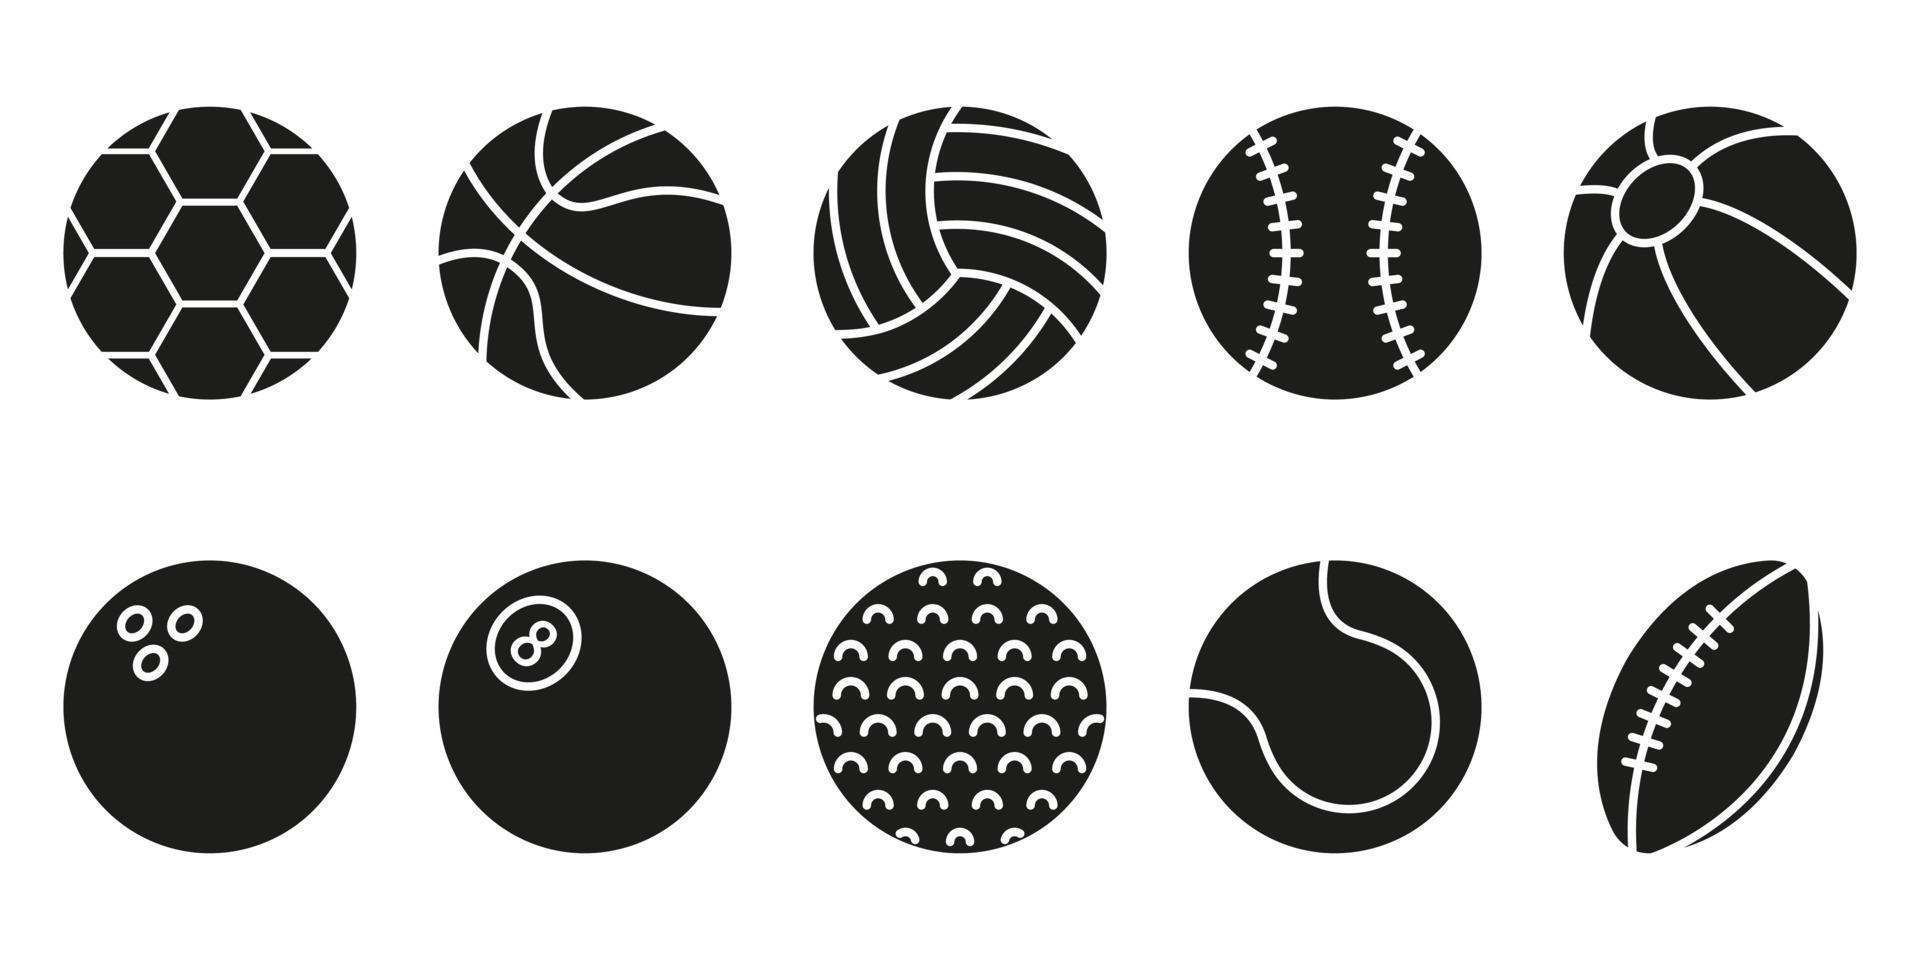 coleção de bolas para basquete, beisebol, tênis, rugby, futebol, vôlei, golfe, piscina, pictograma de boliche. conjunto de ícone de bolas de jogo de esporte. bola inflável, símbolo de softbol. ilustração vetorial. vetor